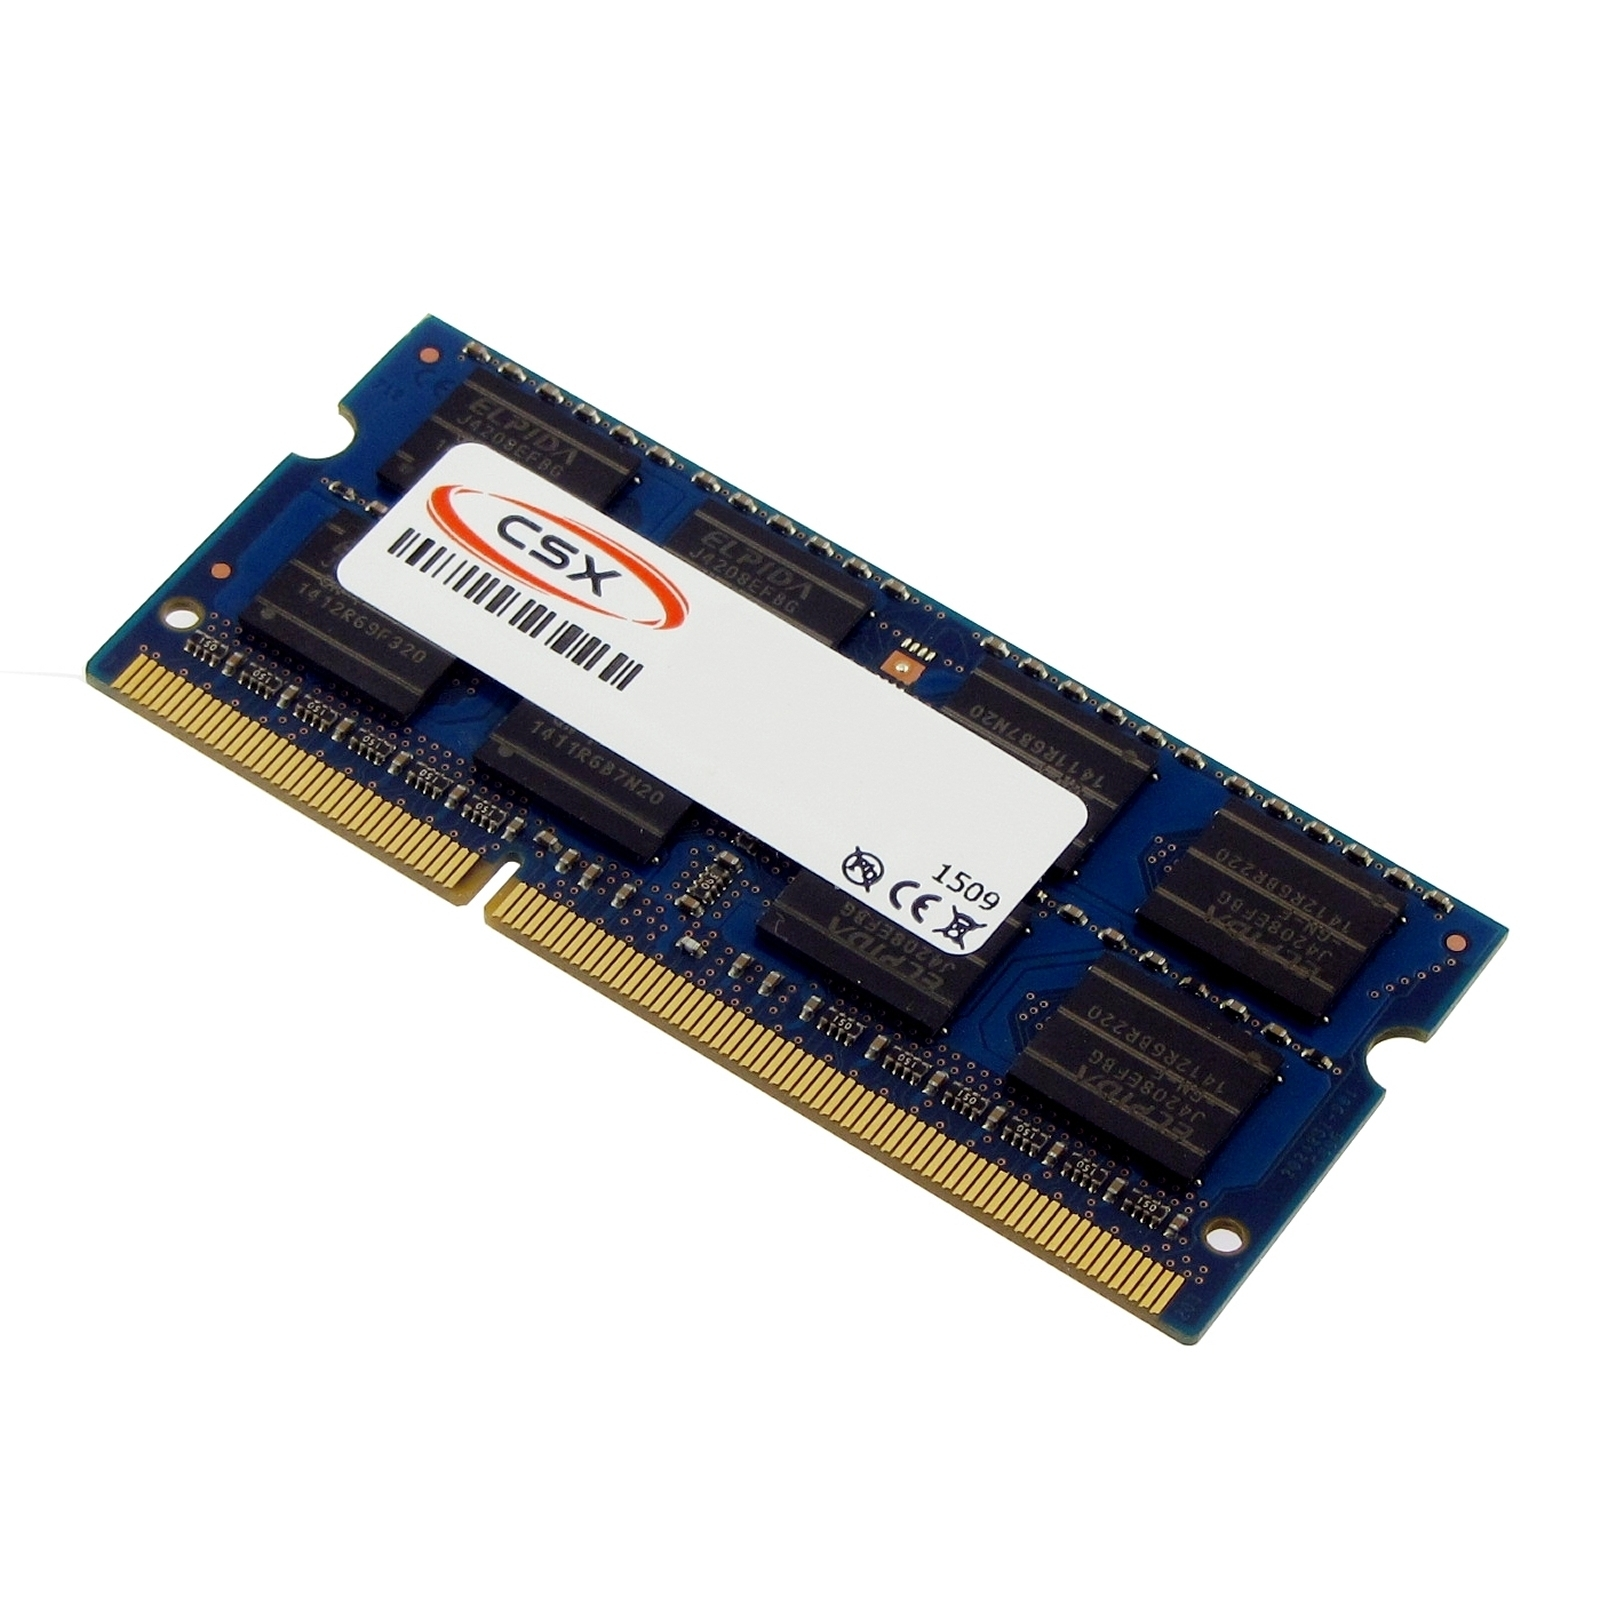 Notebook-Speicher RAM DDR3 Arbeitsspeicher GB 2 2 MTXTEC A665-S6056 Satellite TOSHIBA GB für